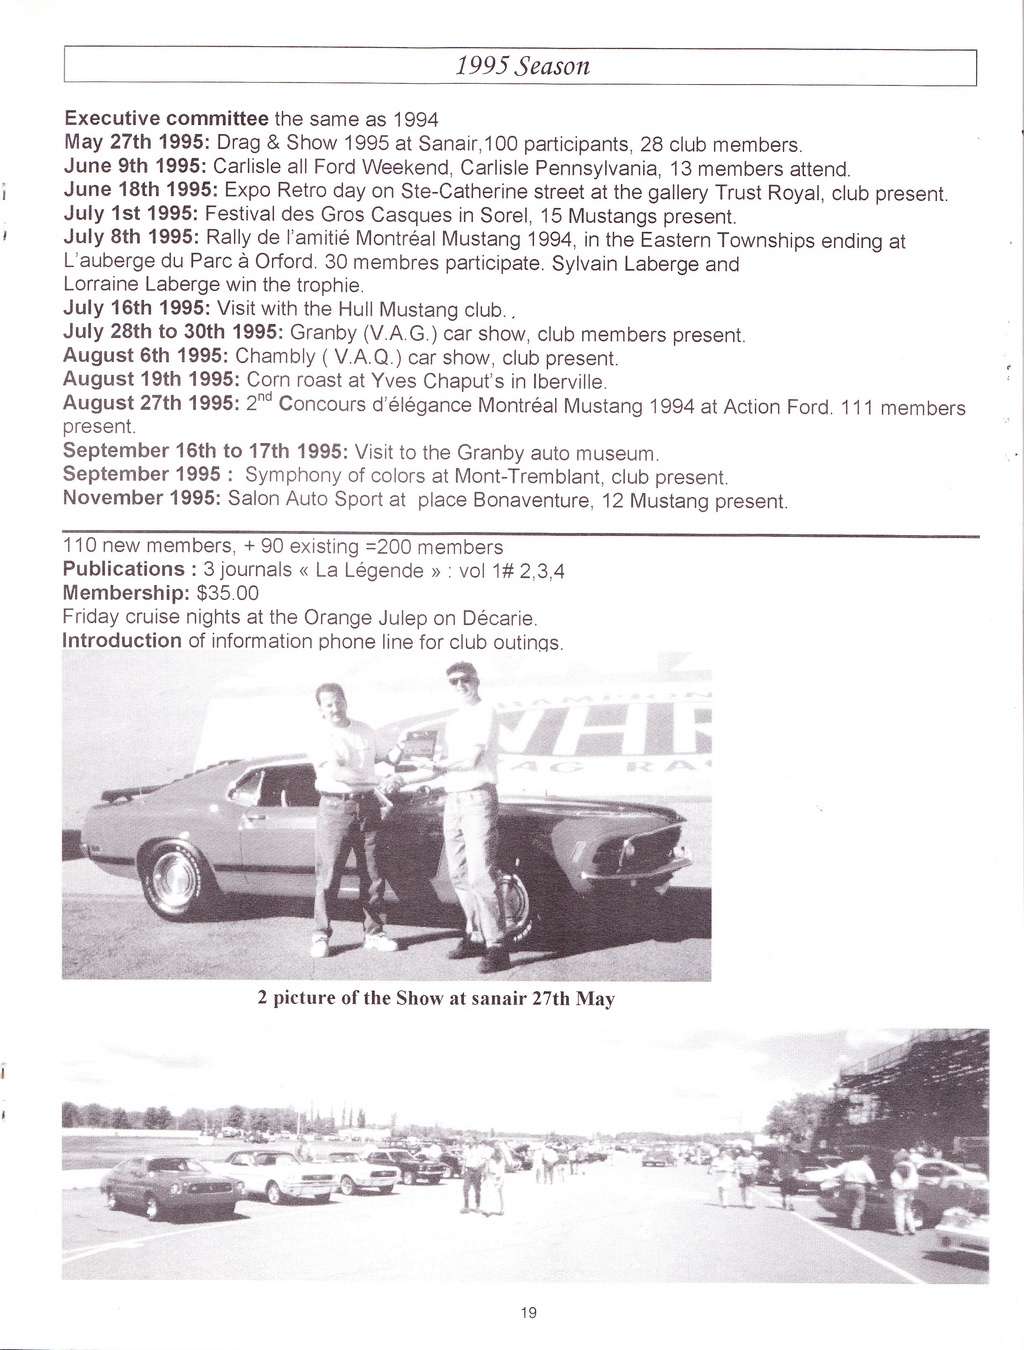 Montréal Mustang dans le temps! 1981 à aujourd'hui (Histoire en photos) La_lyg57